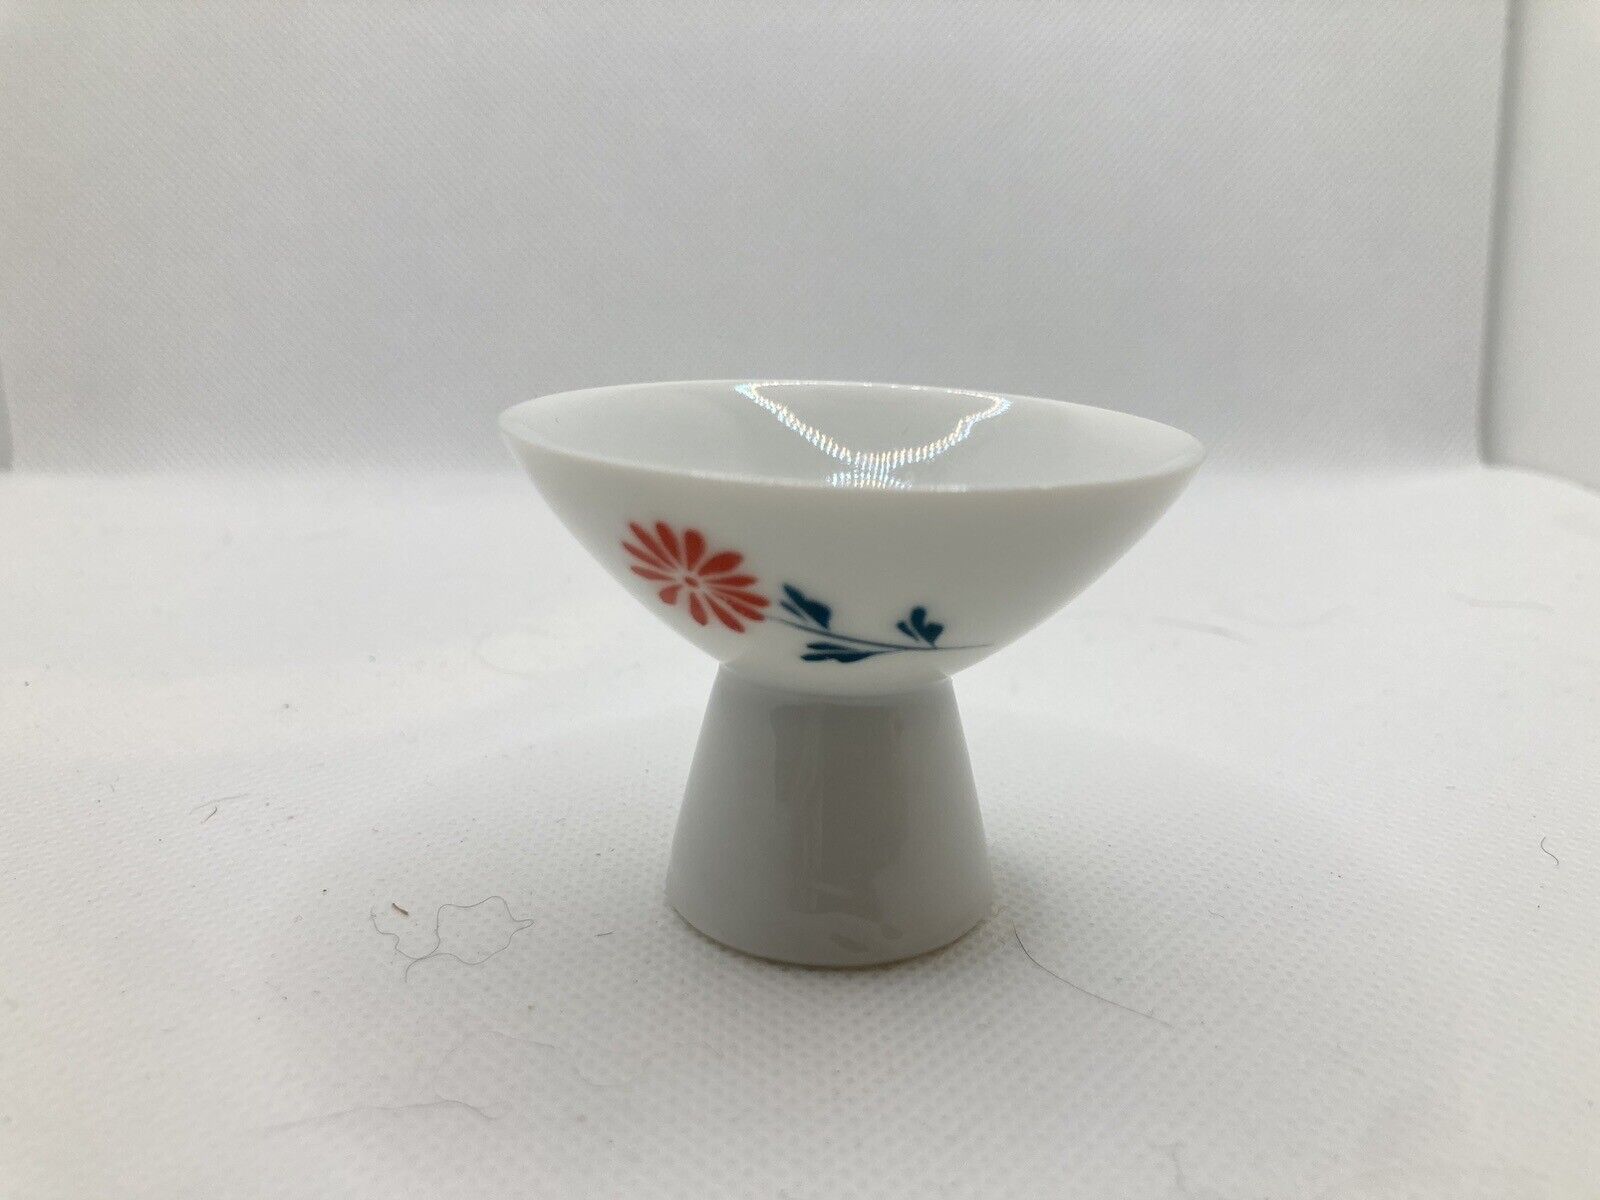 VTG Sake / Saki Cup White Footed Porcelain Shot Glasses Japan